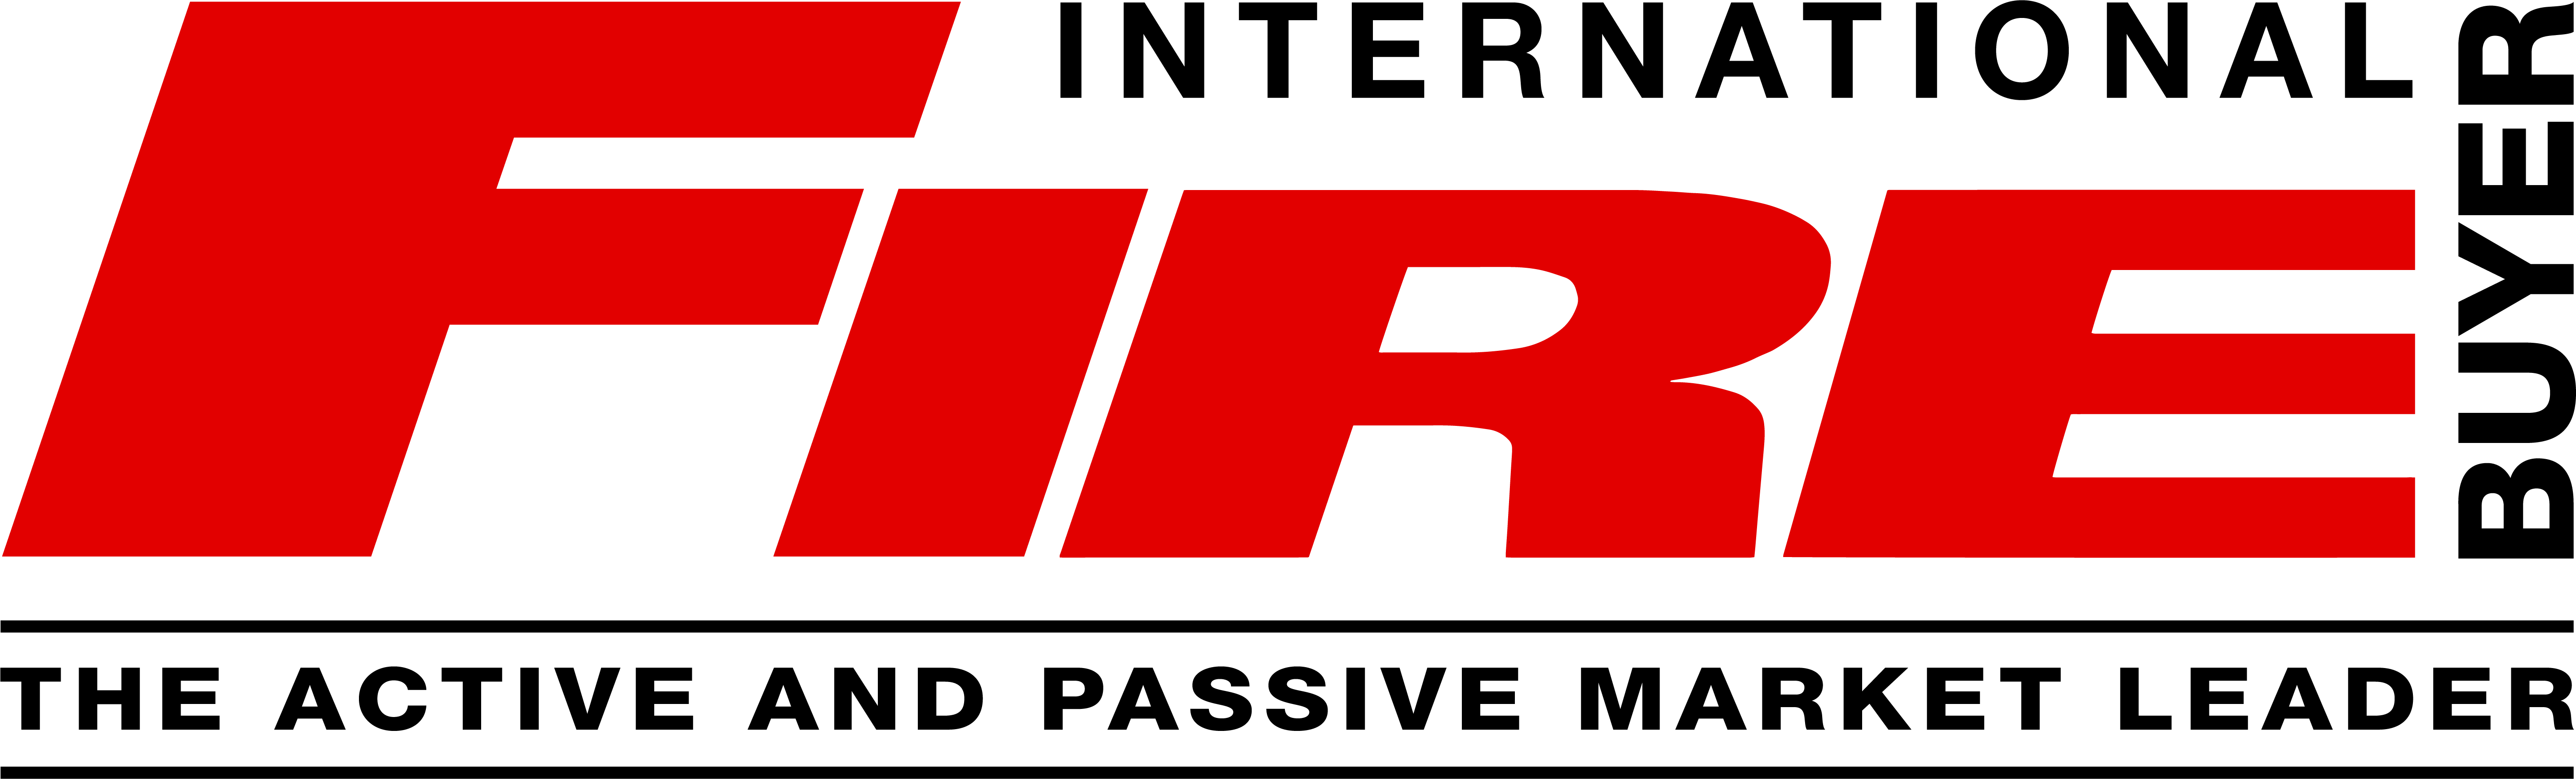 International Fire Buyer logo